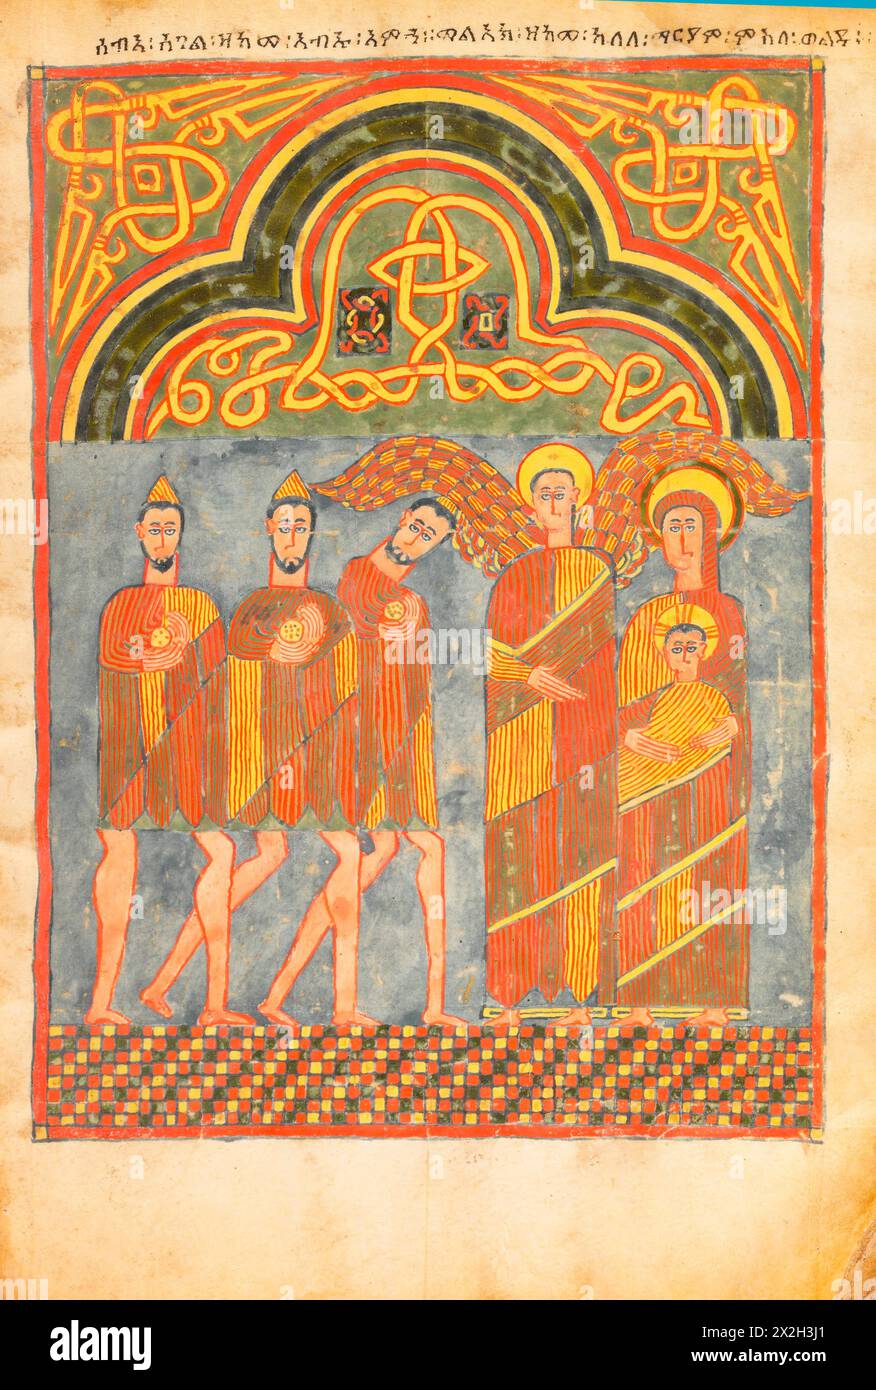 Evangile illuminé - peuples Amhara - L'Adoration des Mages - fin du XIVe au début du XVe siècle Banque D'Images